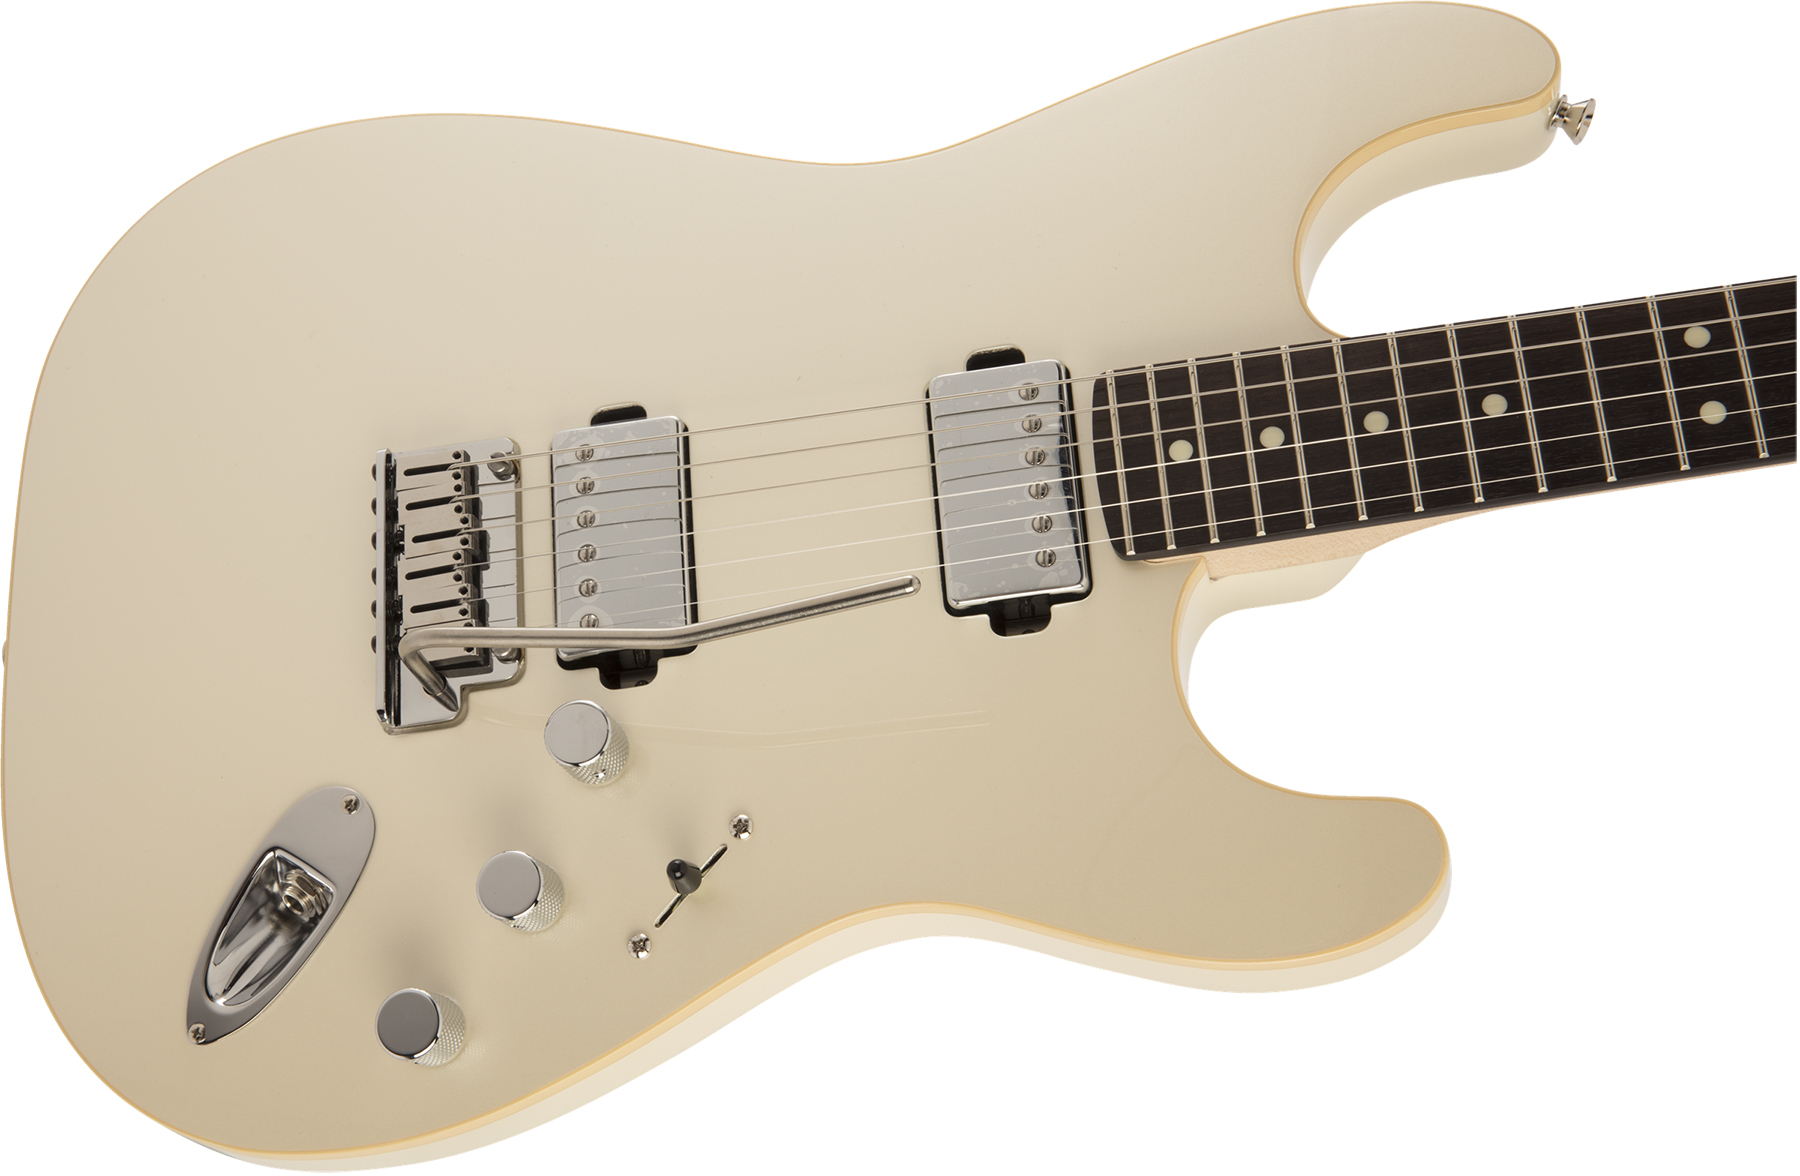 Fender Strat Modern Hh Japon Trem Rw - Olympic Pearl - E-Gitarre in Str-Form - Variation 2